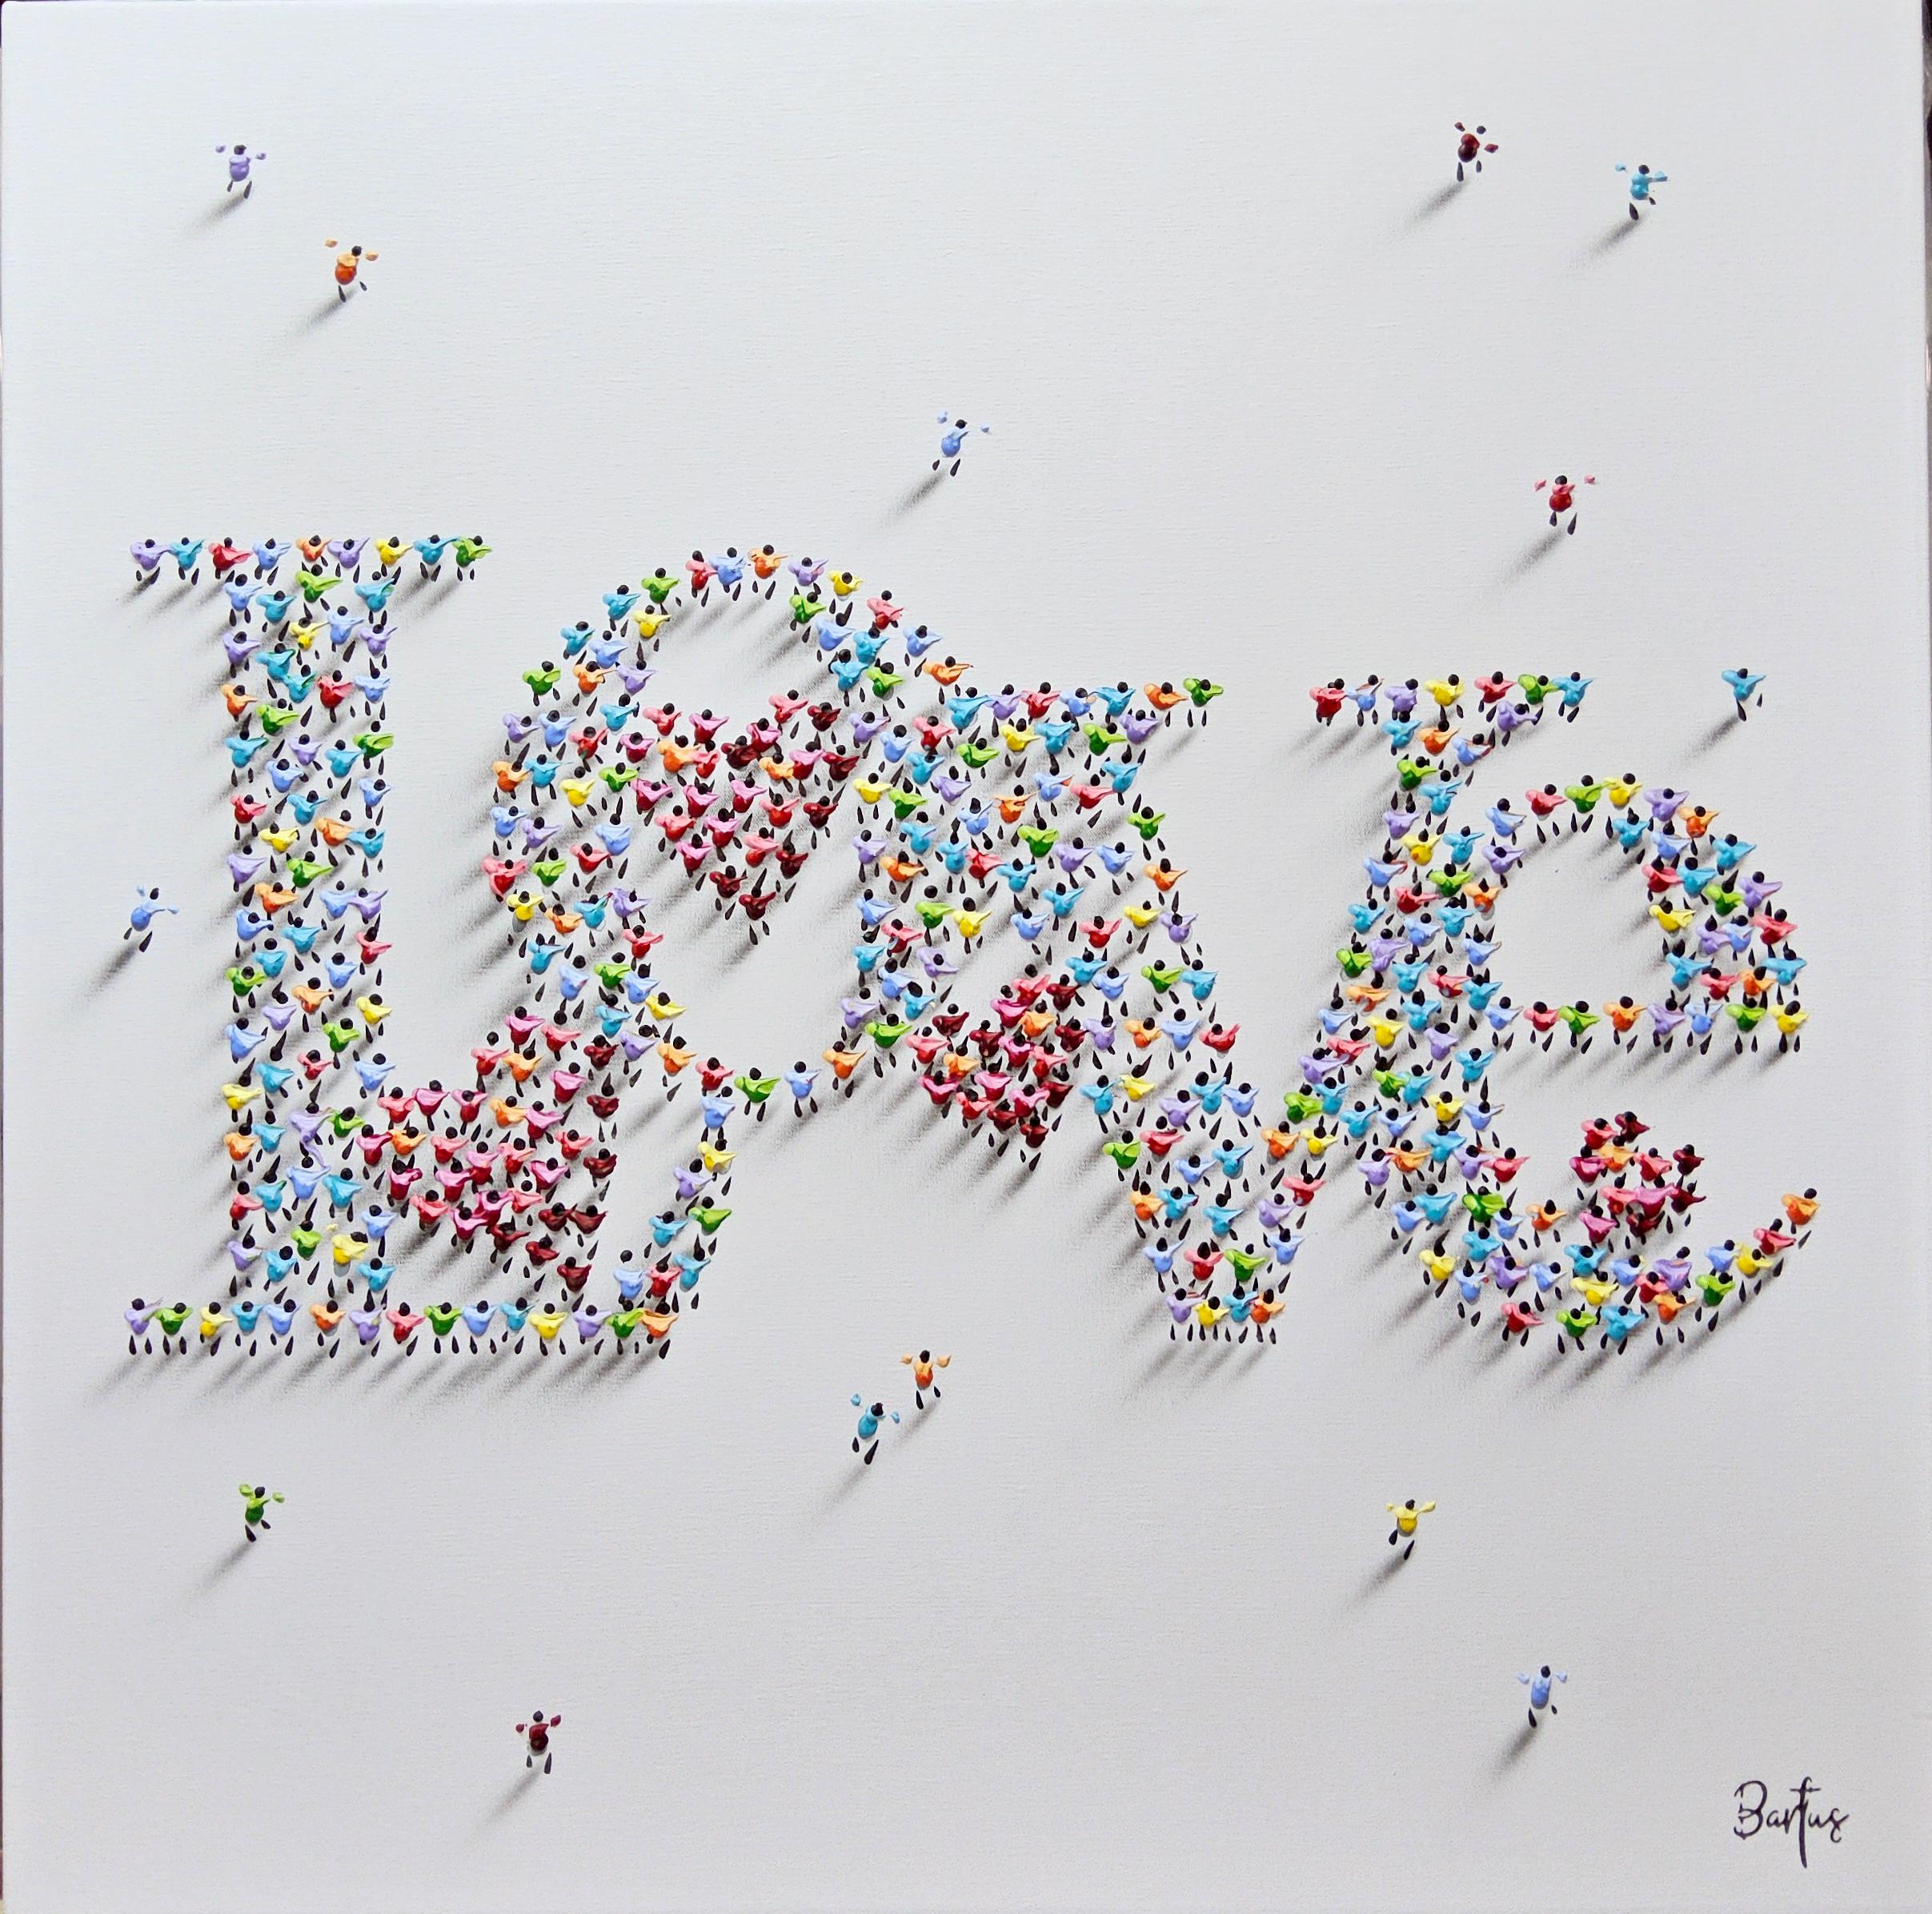 Francisco Bartus, "All You Need is Love", 32x32, peinture de techniques mixtes texturée 